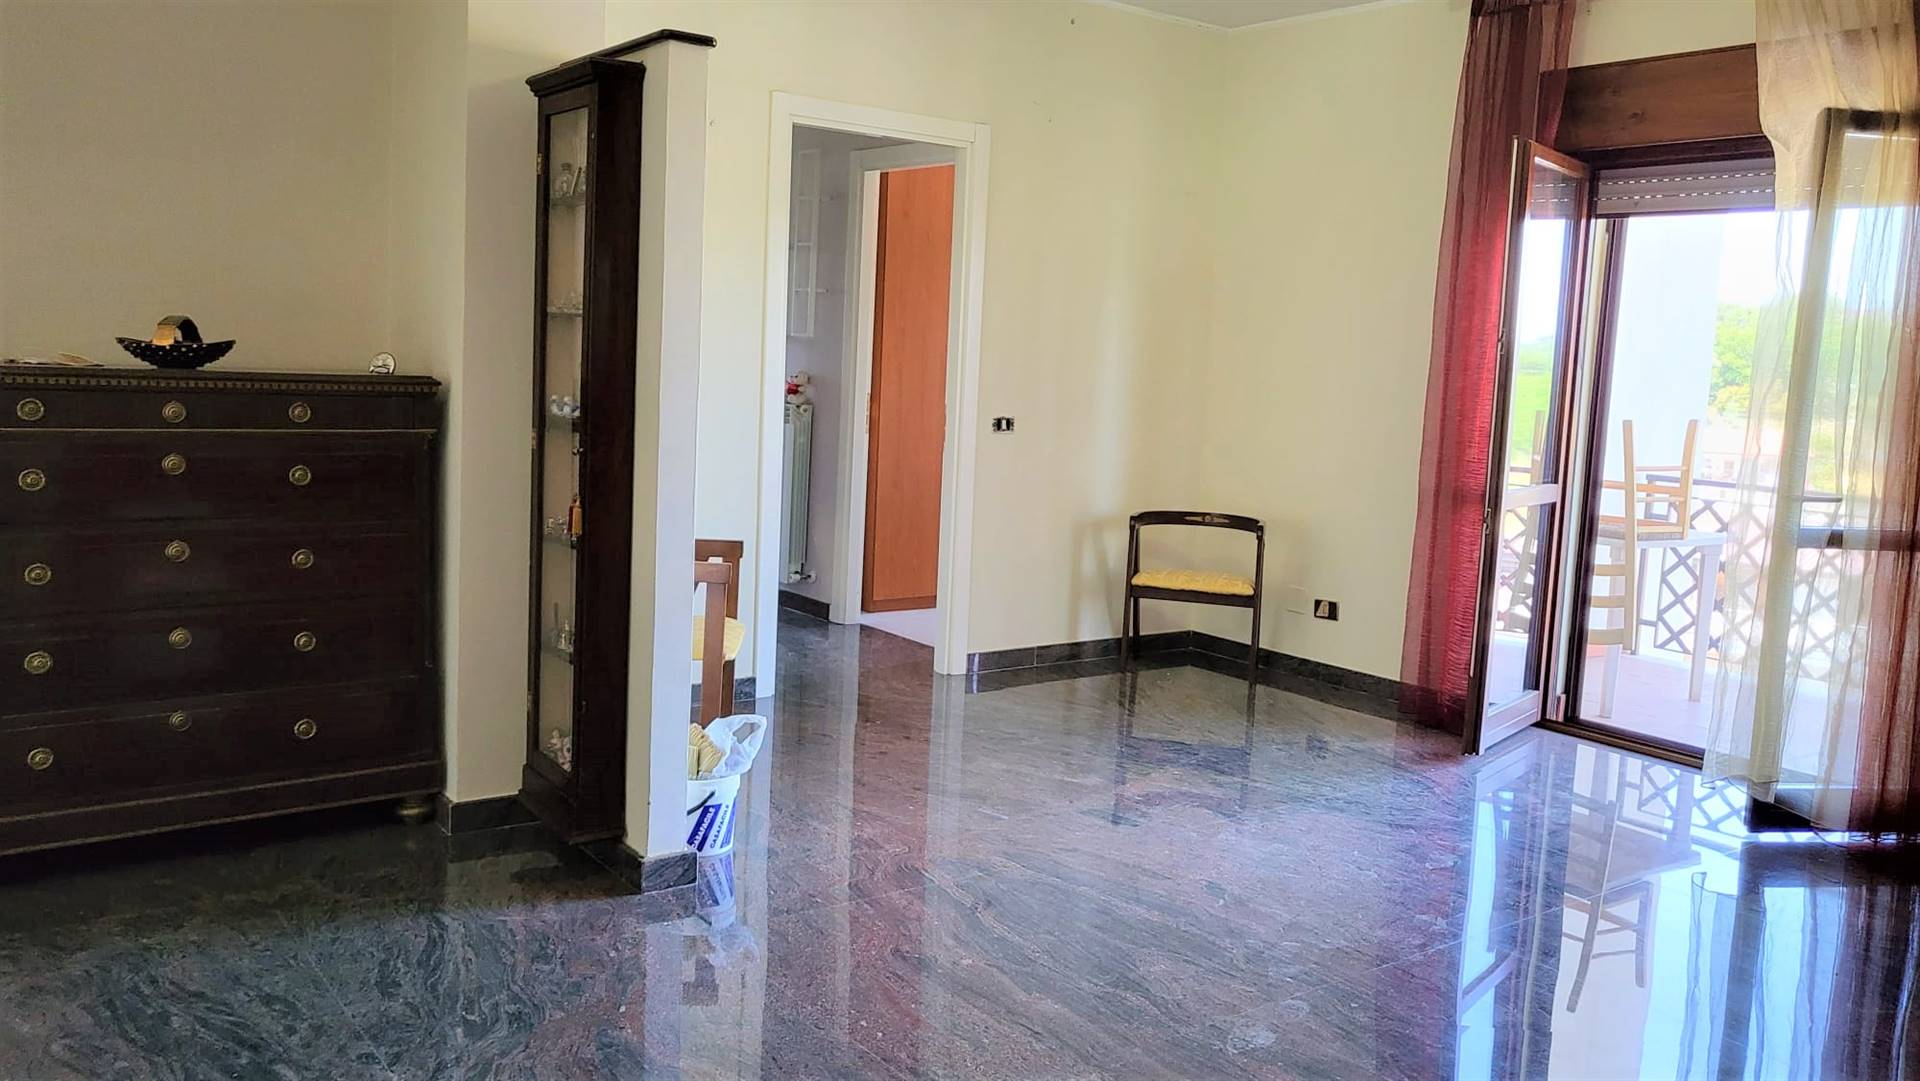 Appartamento in vendita a Montalto Uffugo, 4 locali, zona Località: SETTIMO, prezzo € 93.000 | CambioCasa.it